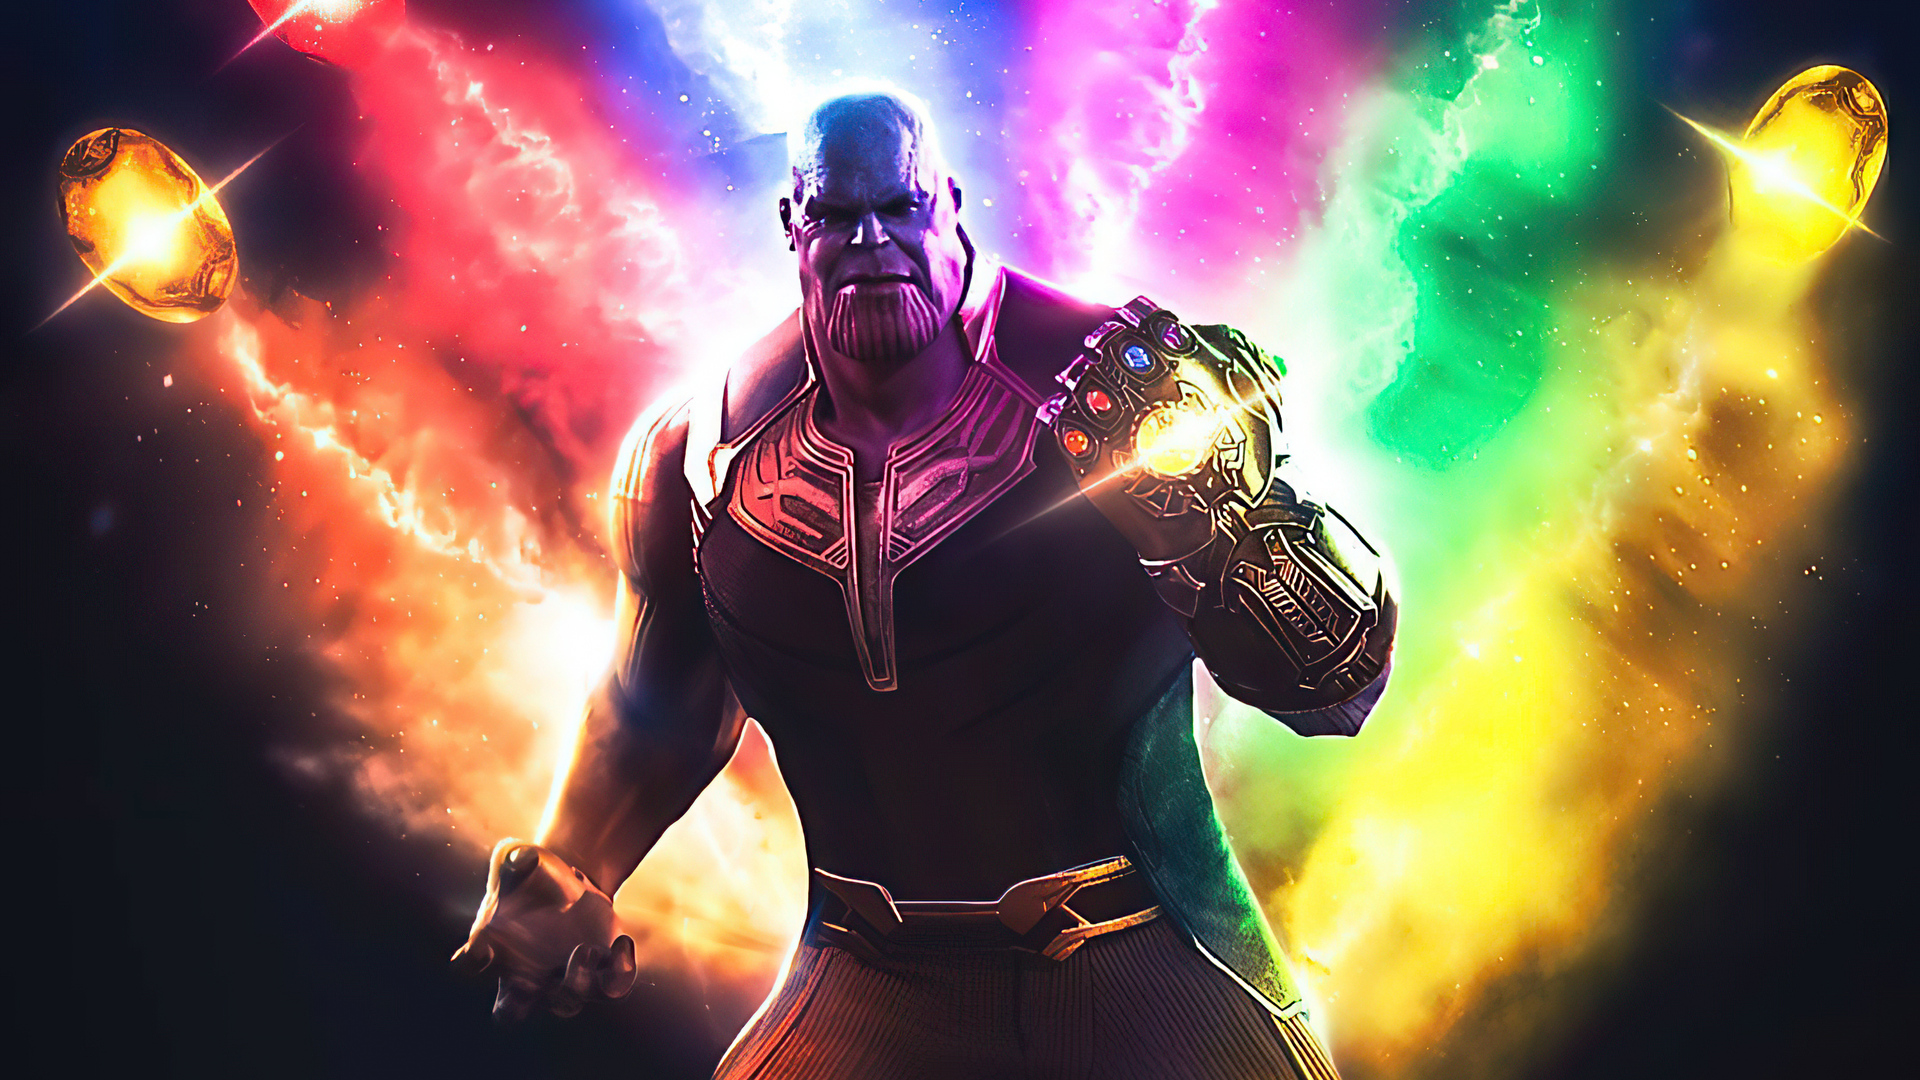 Hình nền Thanos: Nếu bạn là fan của vũ trụ siêu anh hùng Marvel, chắc chắn sẽ không thể bỏ qua hình nền đầy quyền lực của Thanos. Hãy xem ngay để cảm nhận sự bá đạo và sức mạnh của tên ác nhân mạnh nhất vũ trụ.